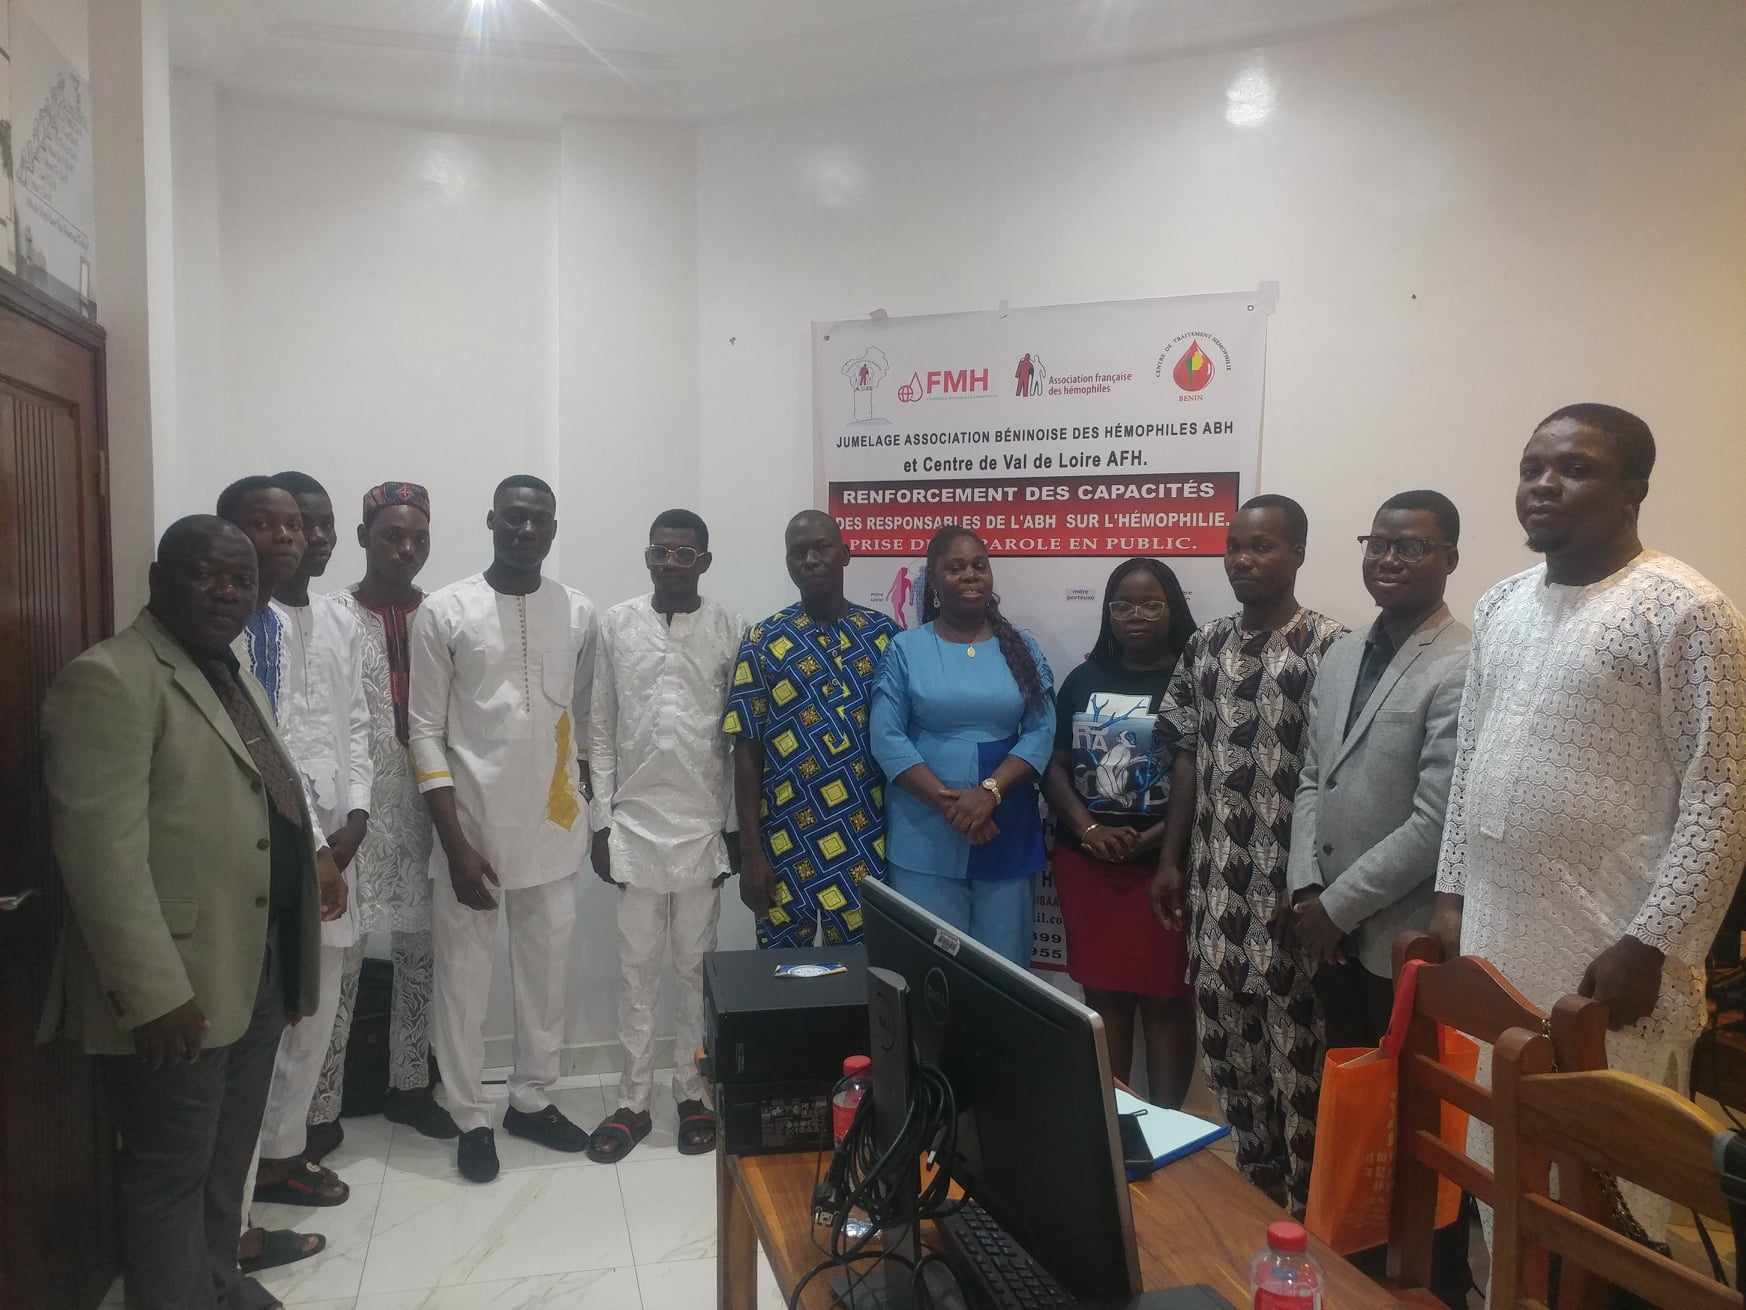 Bénin : renforcement de capacités sur l’Hémophilie et prise de parole en public au coeur d’une formation des responsables de l’ABH